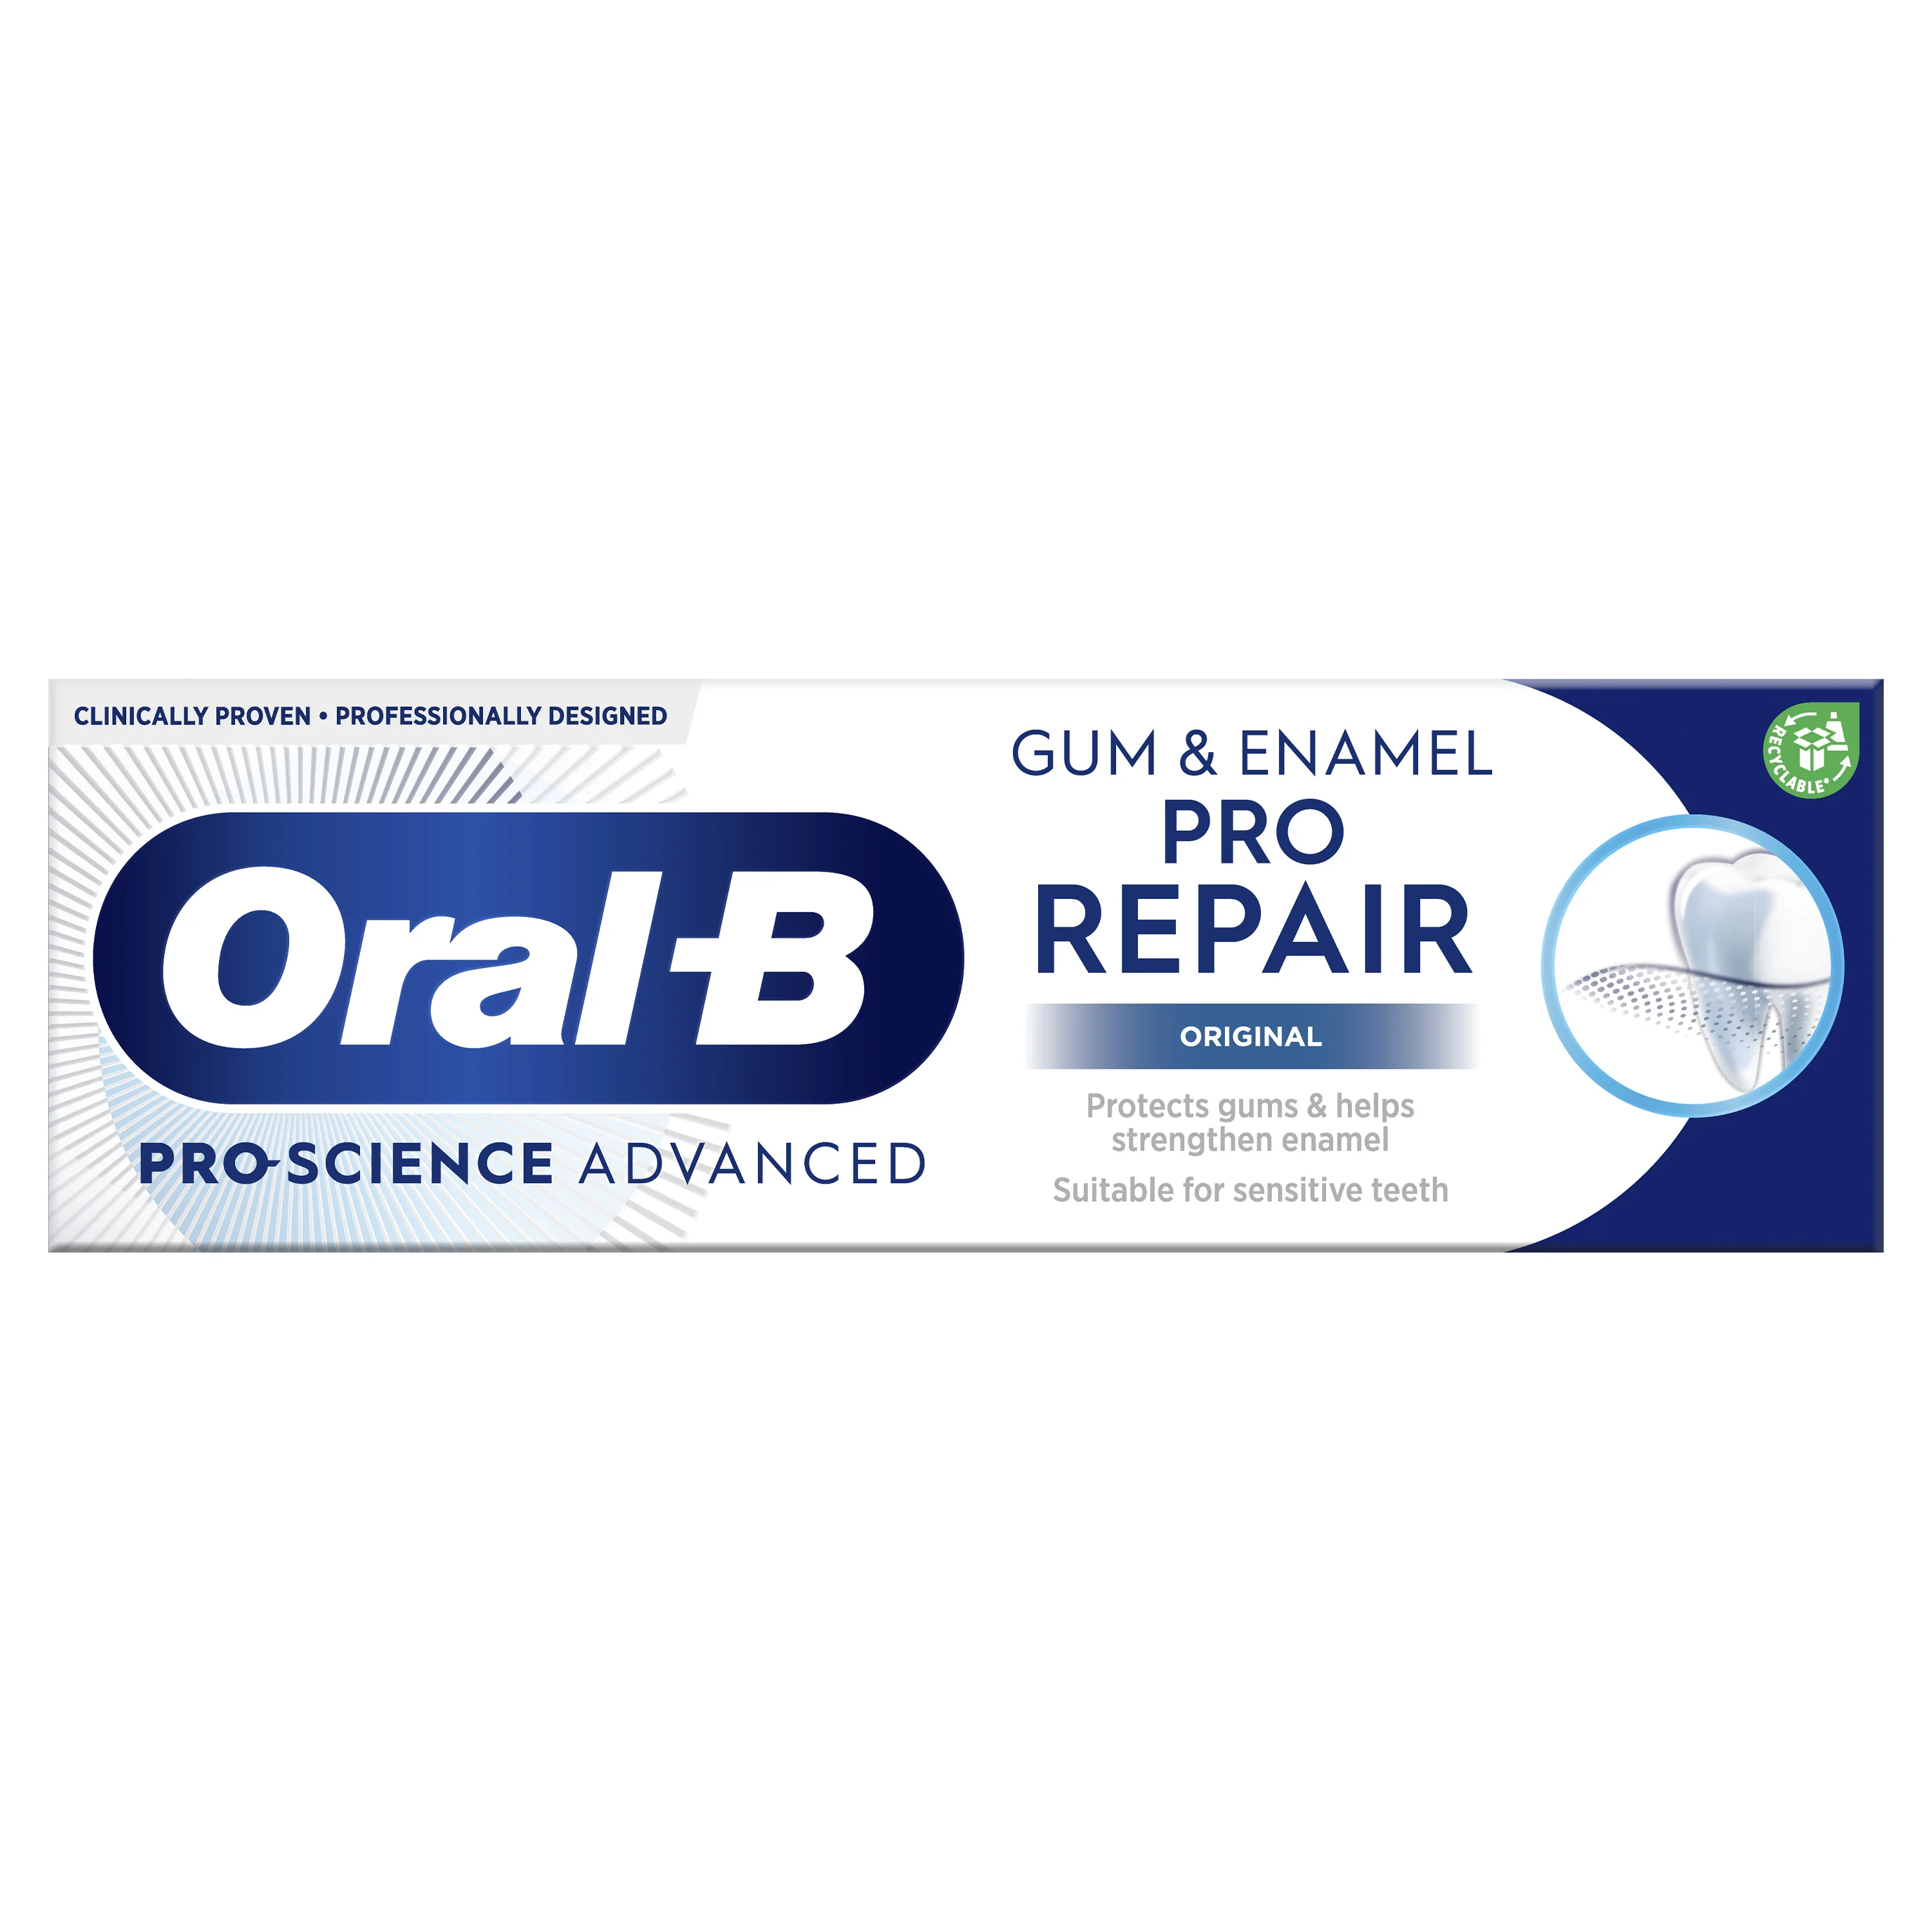 Oral-B Gum & Enamel Pro-Repair Original Tannkrem 